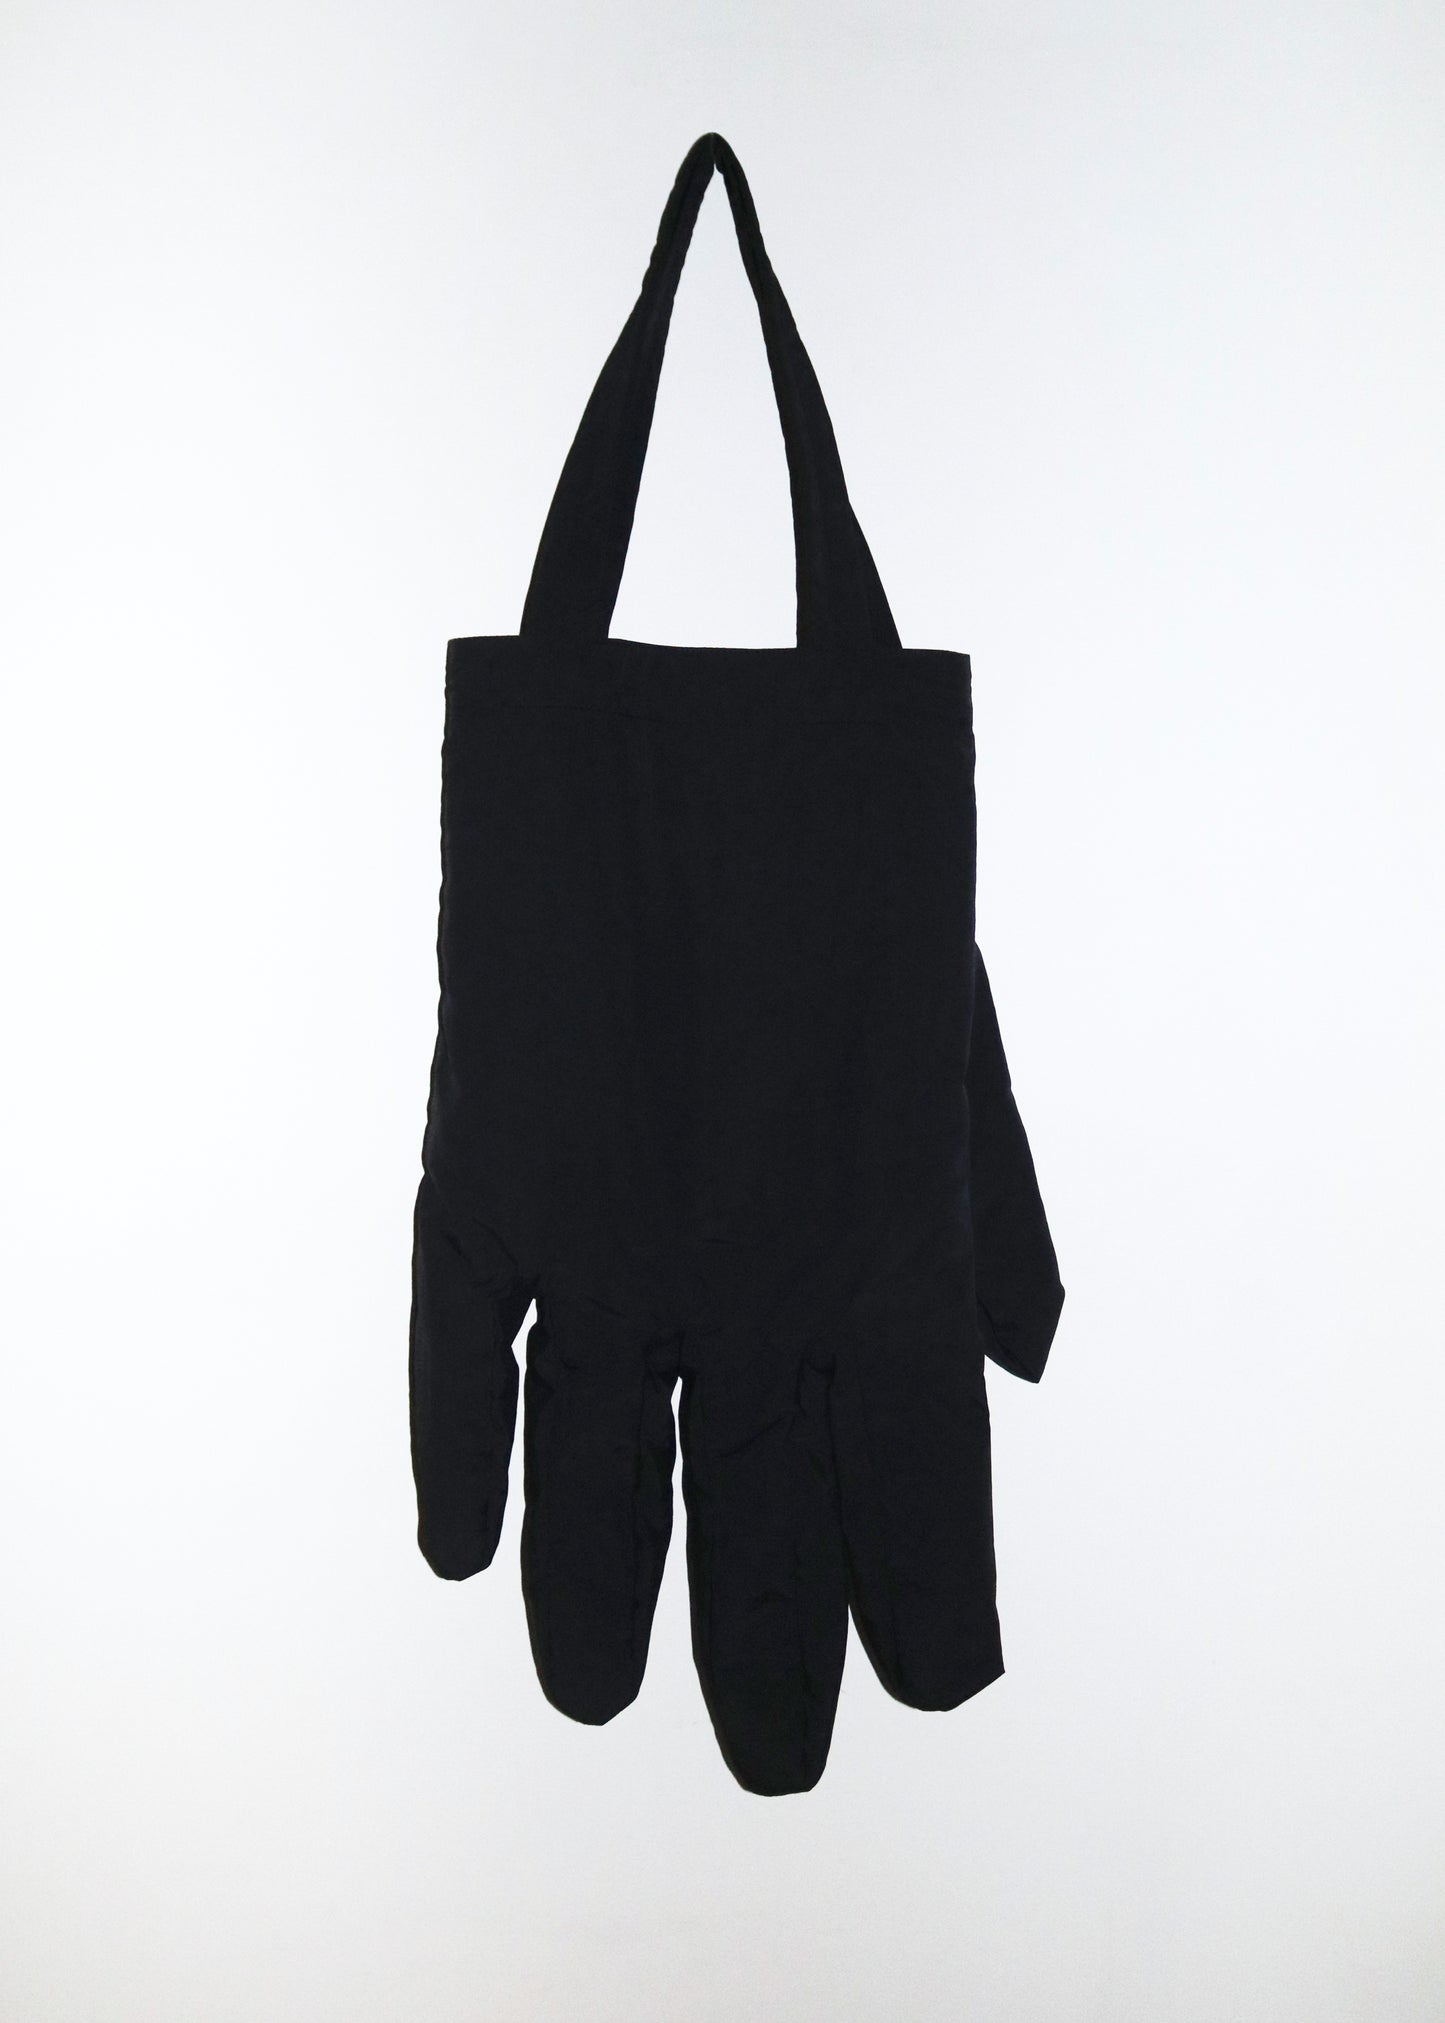 Right Hand Tote in Black Nylon